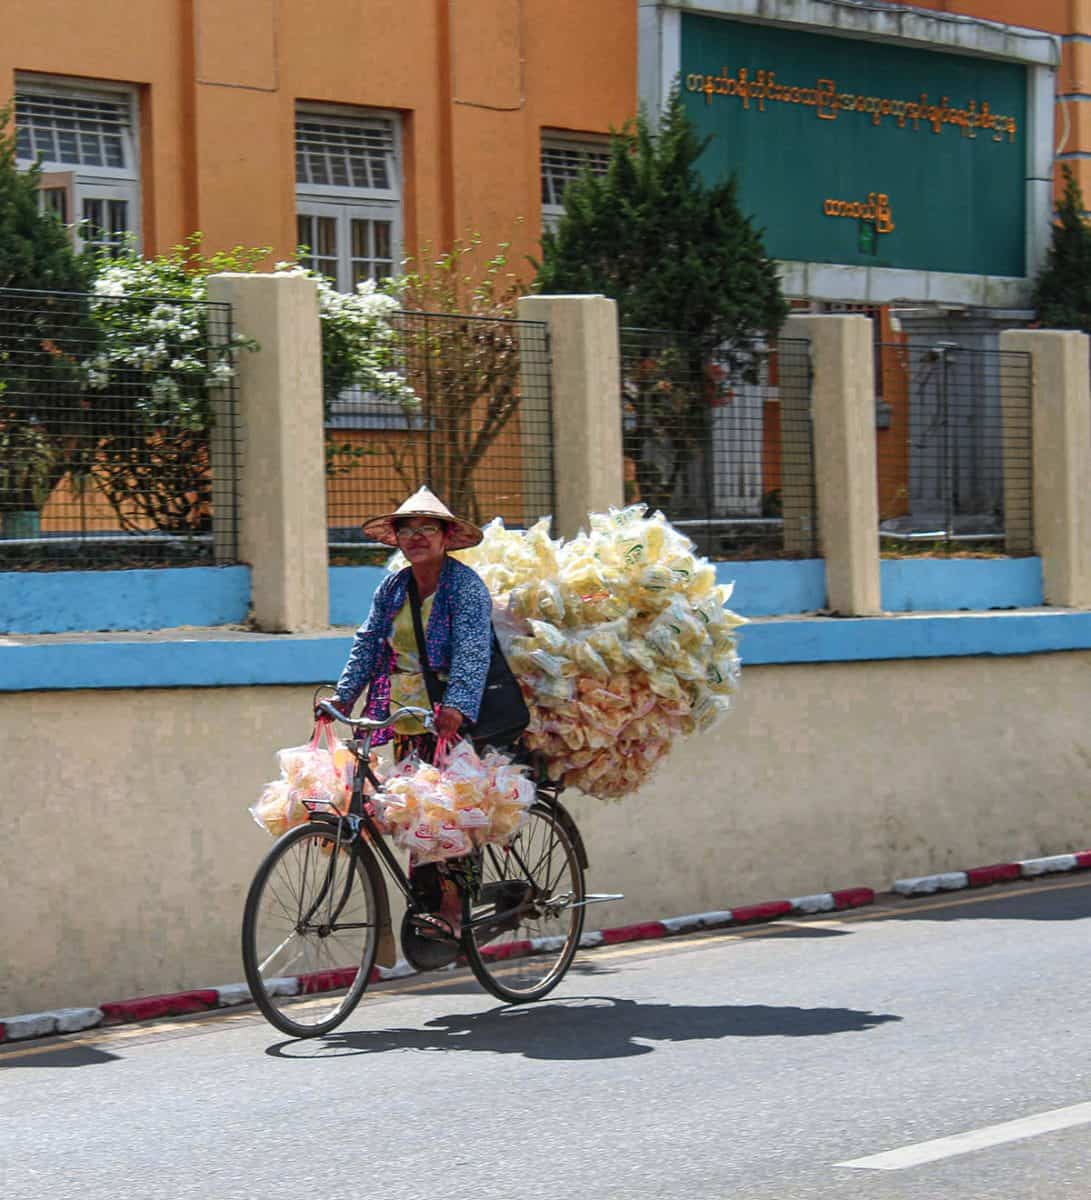 A man riding on his bike in Burma